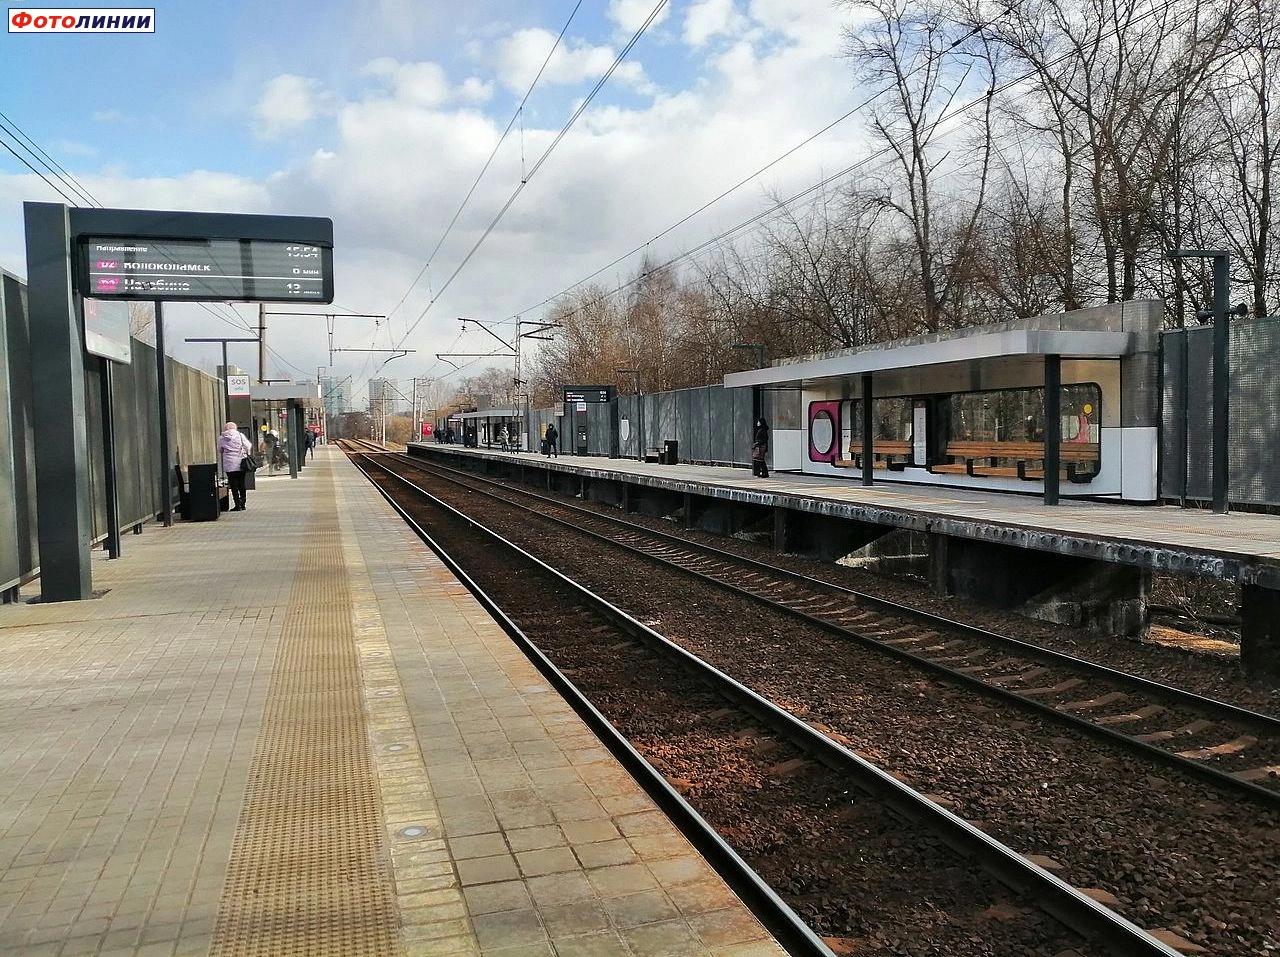 Табло на первой платформе и новый пассажирский павильон на второй платформе, вид в чётном направлении